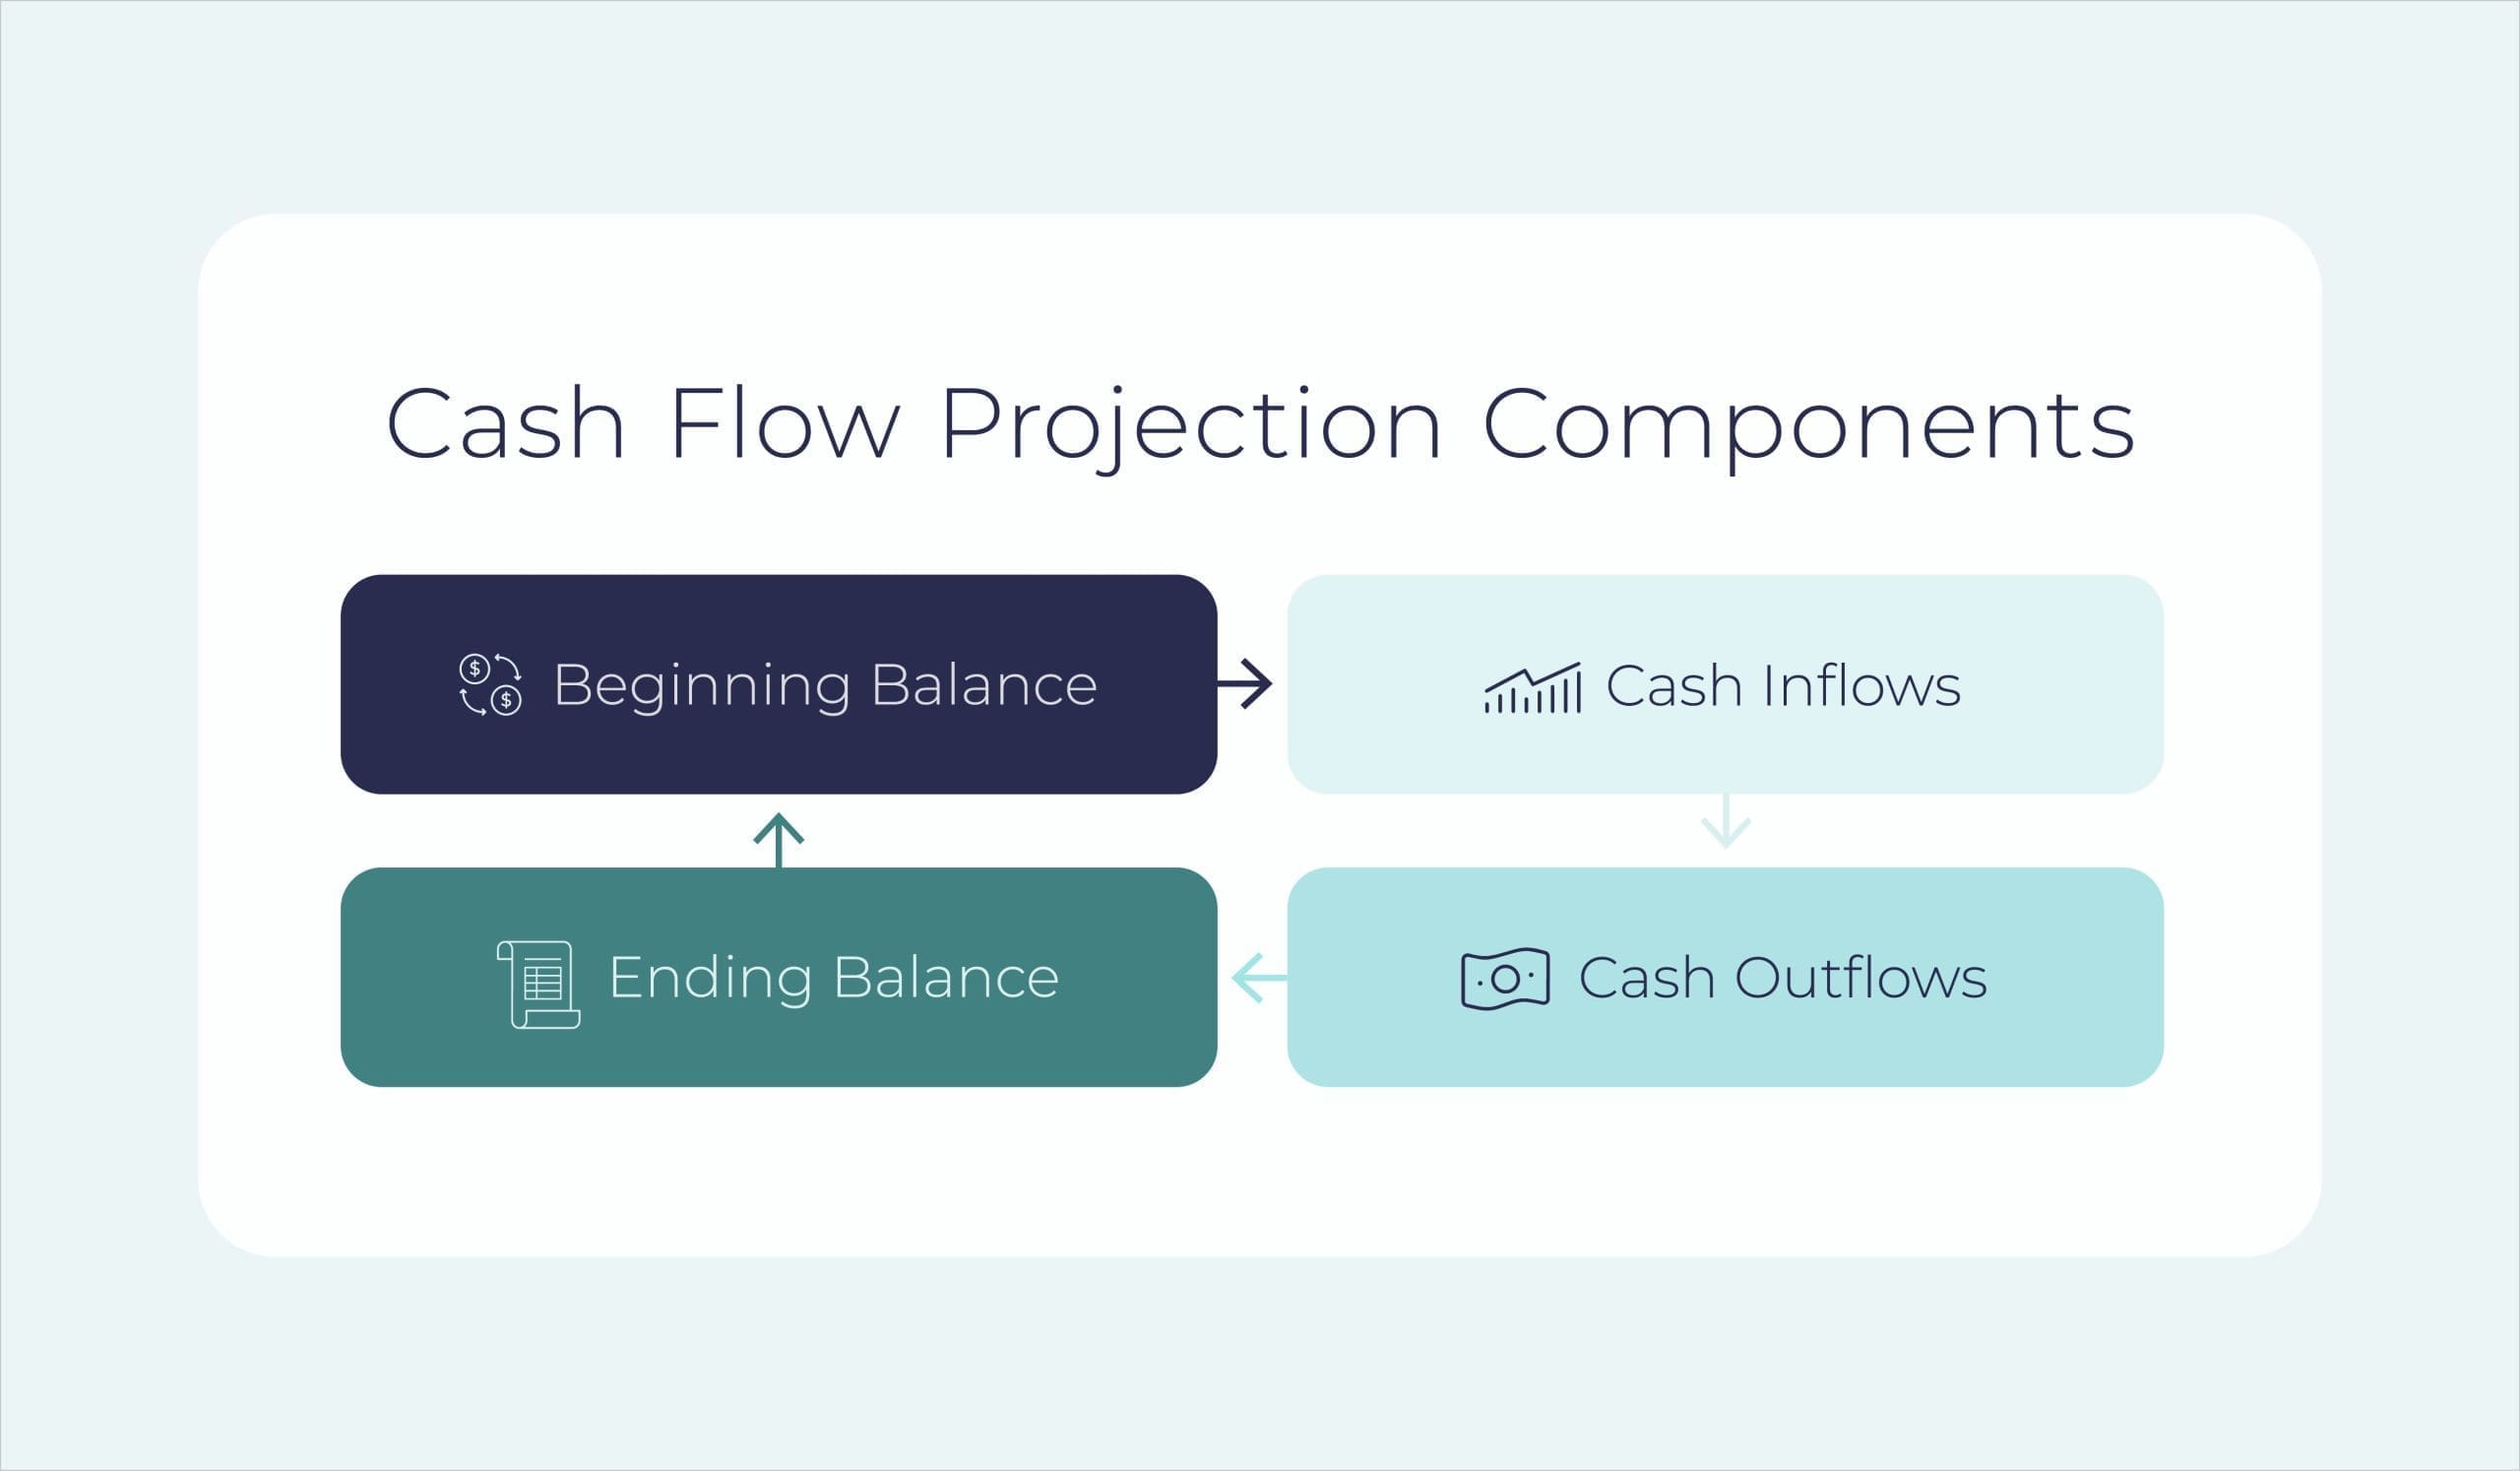 Cash flow projection components